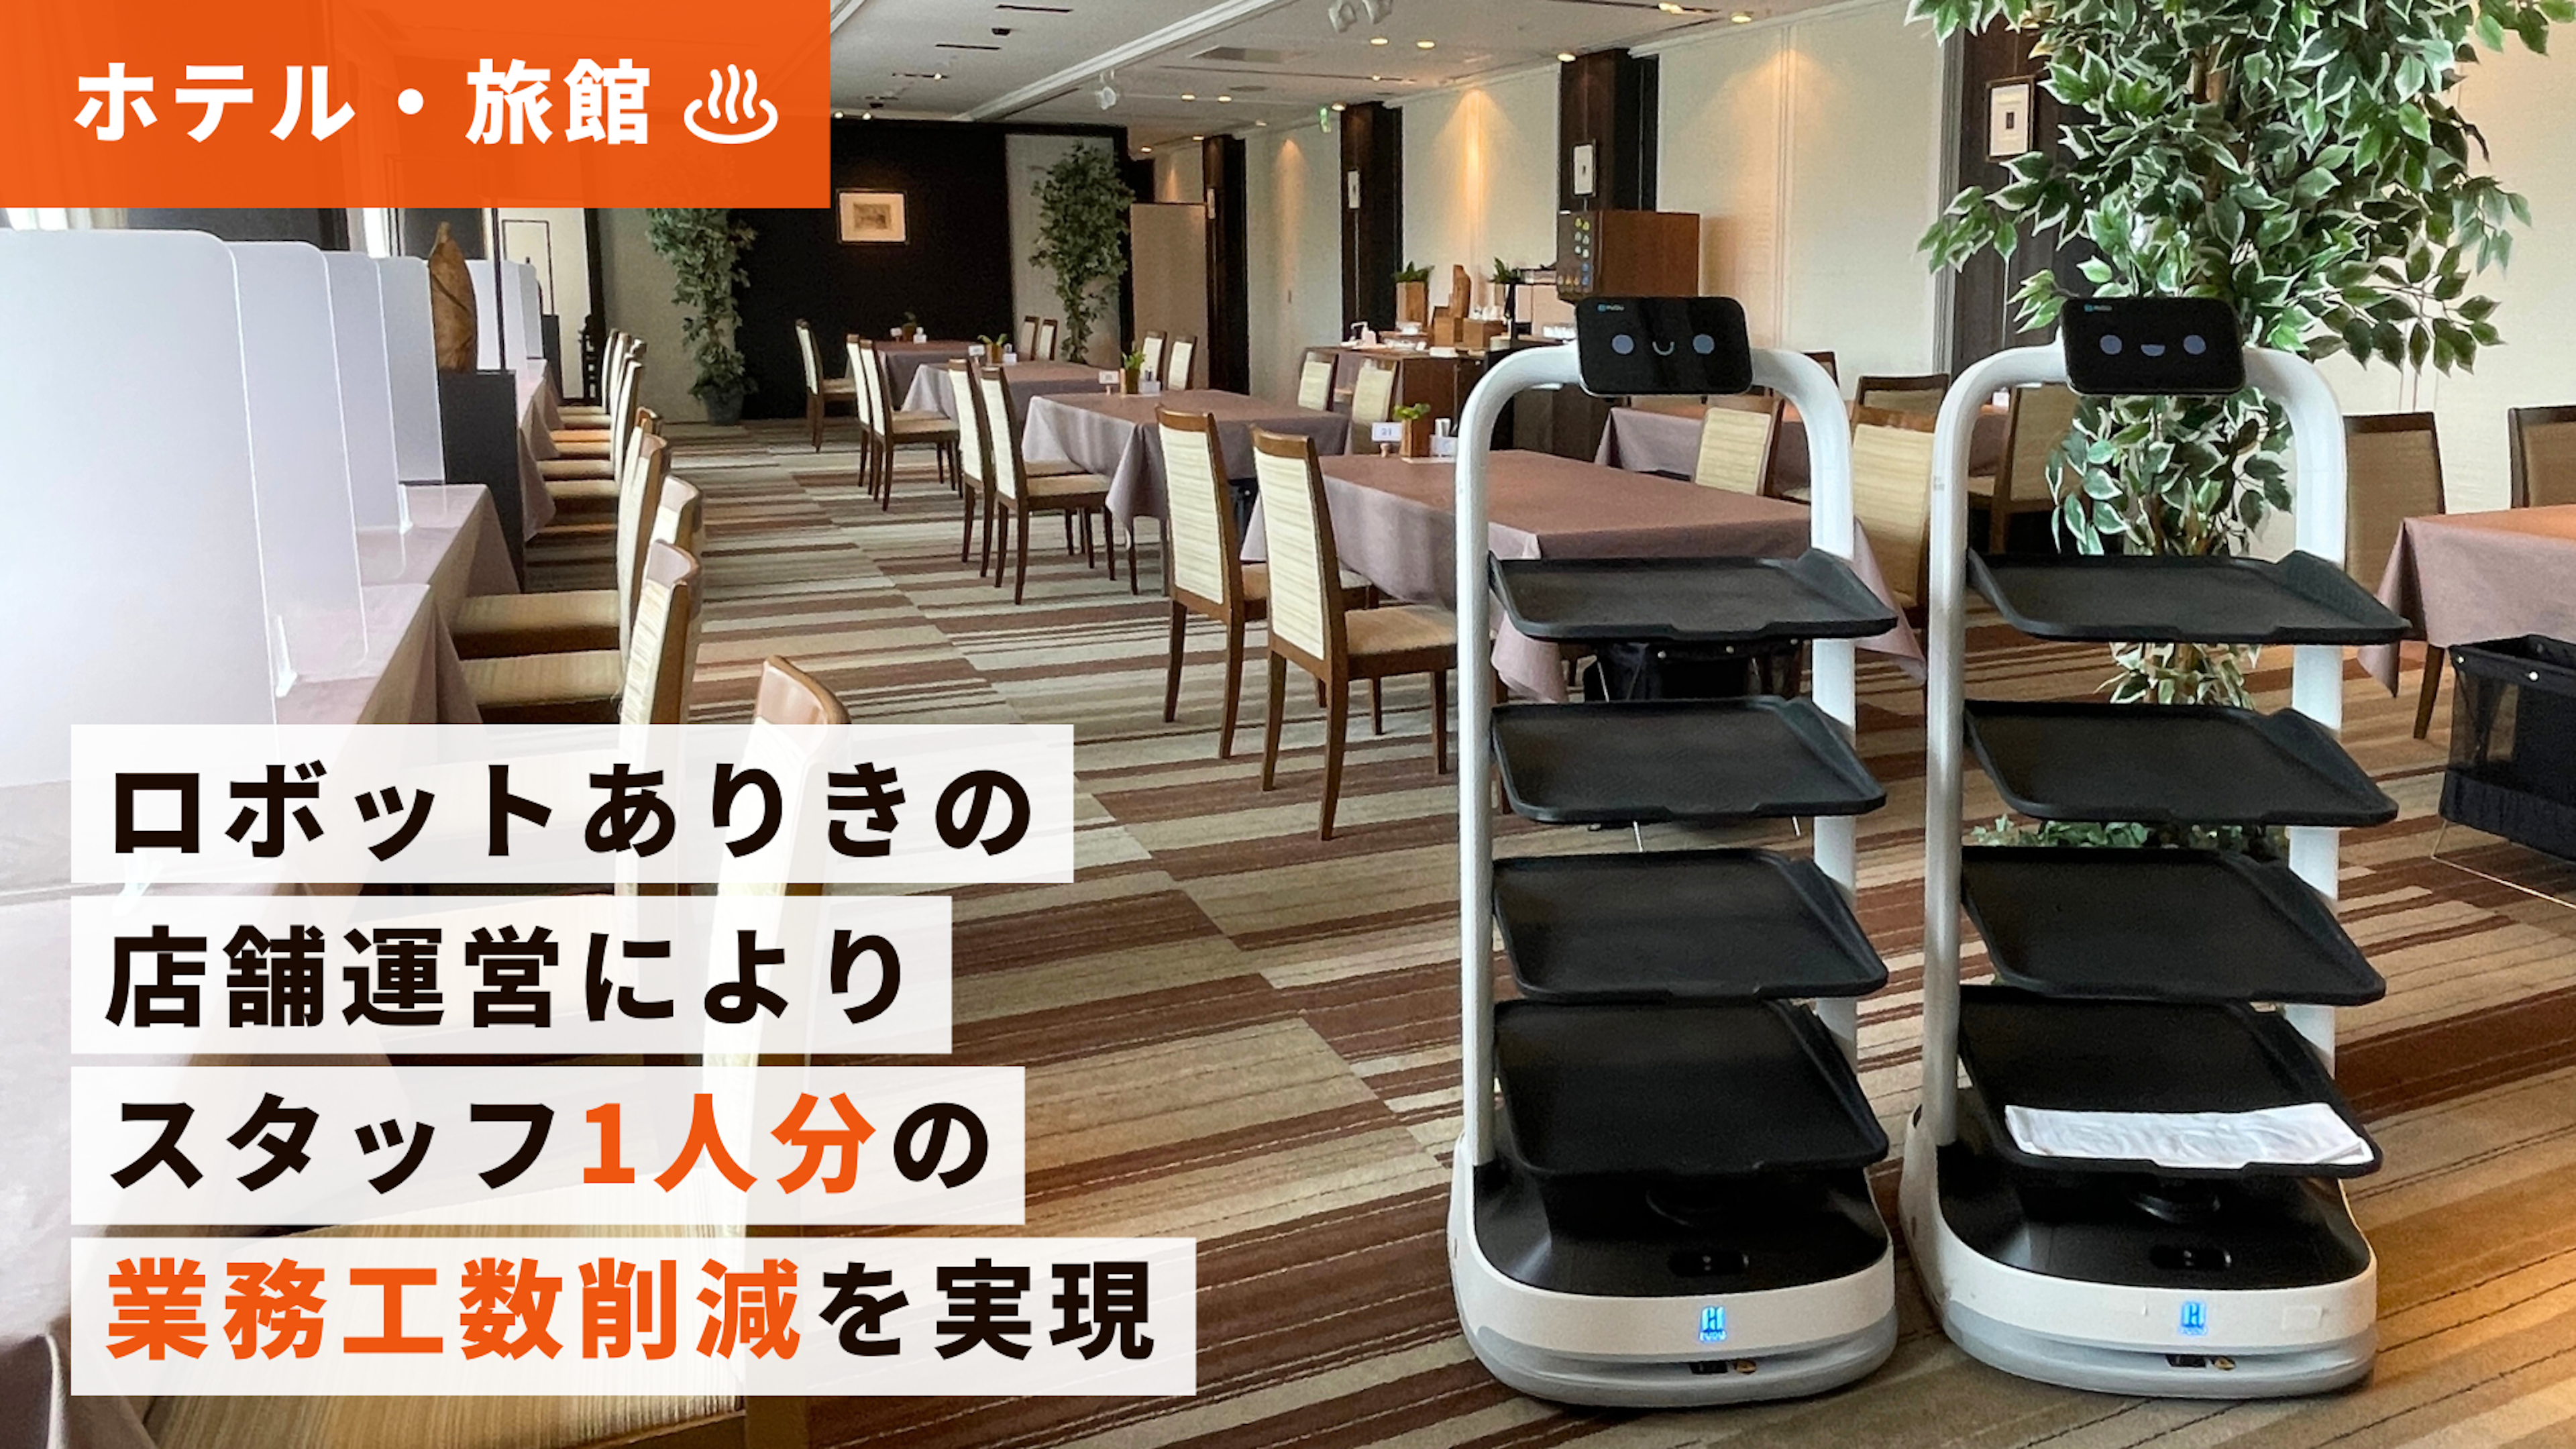 【ホテル導入事例】京王プラザホテル札幌さま｜シンプル設計の多機能配膳ロボット「PuduBot 2」
のキービジュアル